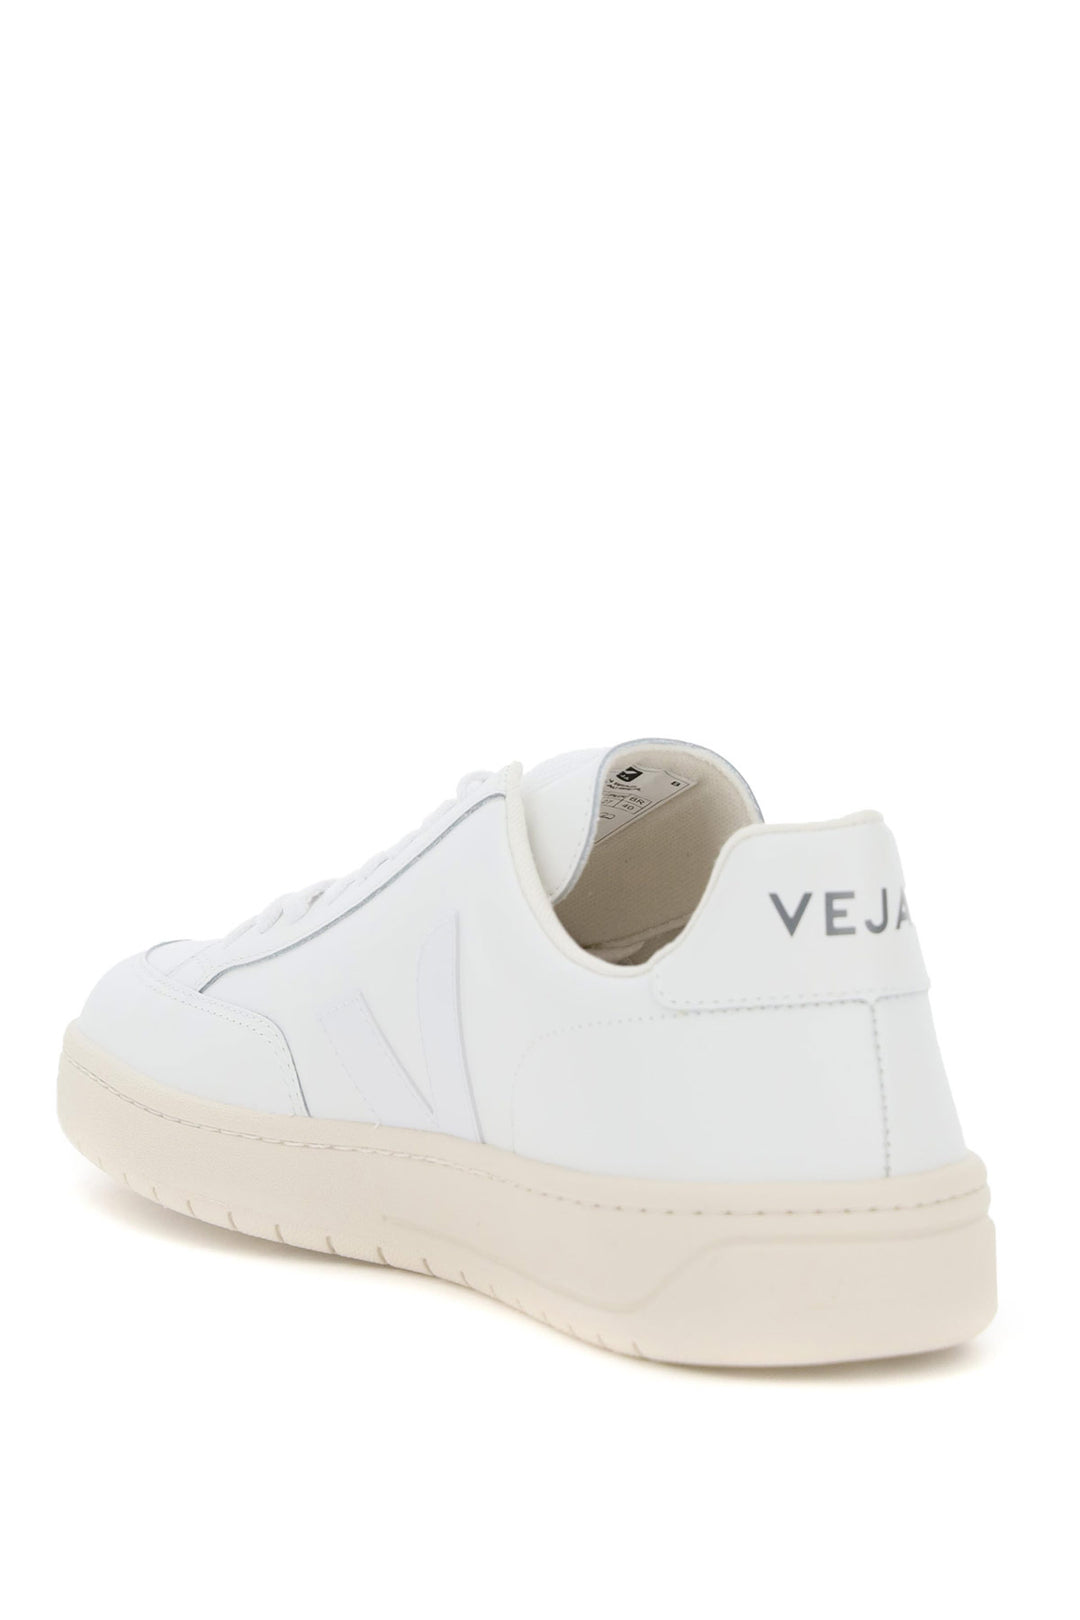 Veja V 12 Leather Sneaker   Bianco